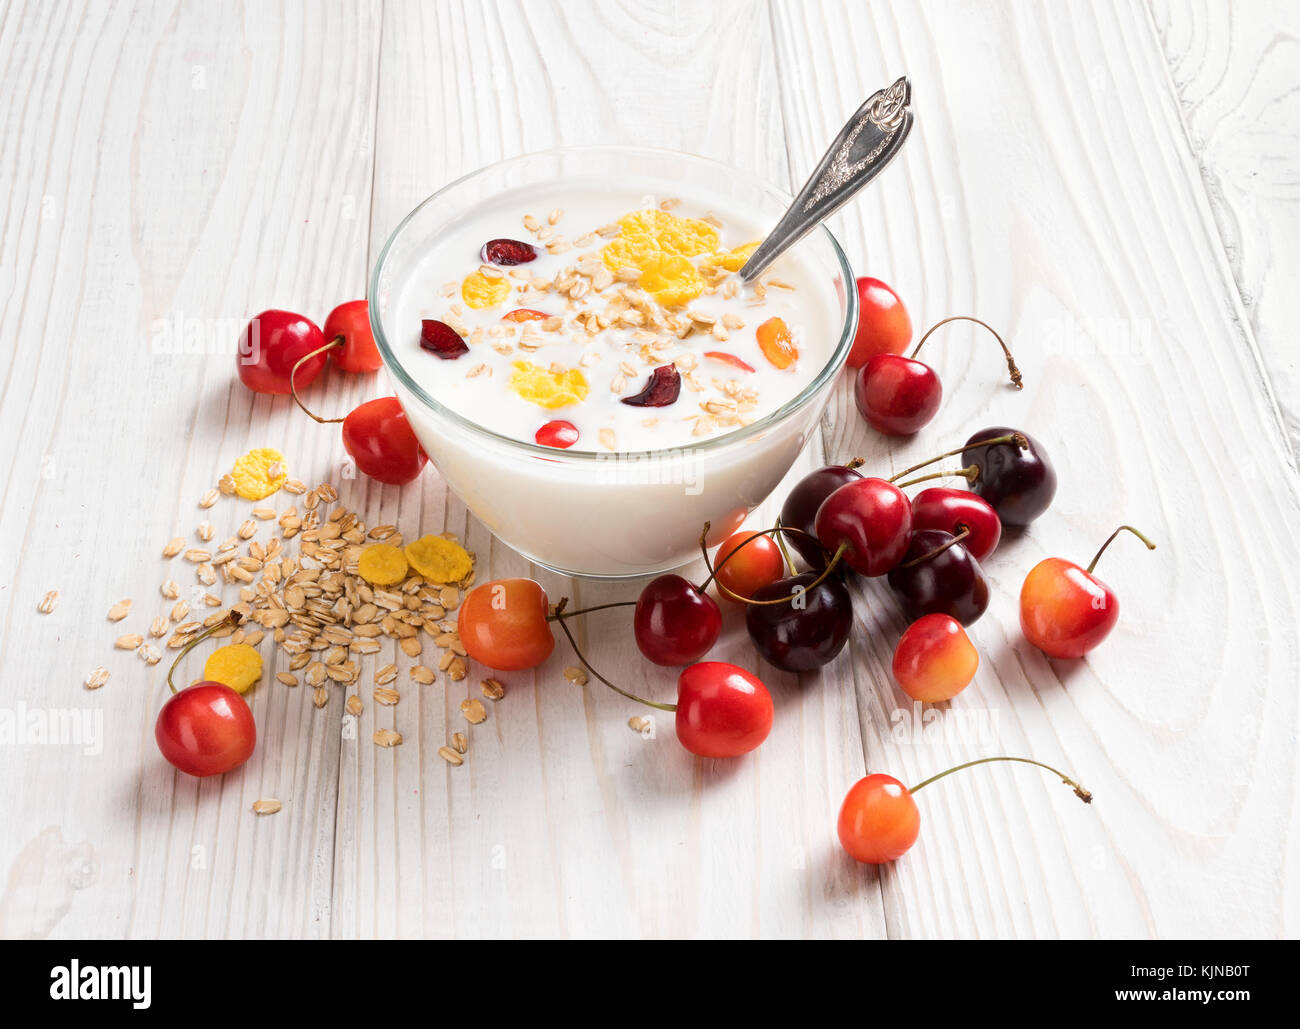 Schüssel mit hausgemachtem Joghurt mit Müsli und frischen Kirsche auf Holztisch. frischen Joghurt. gesunde Ernährung Konzept. hohe Auflösung Produkt. Stockfoto